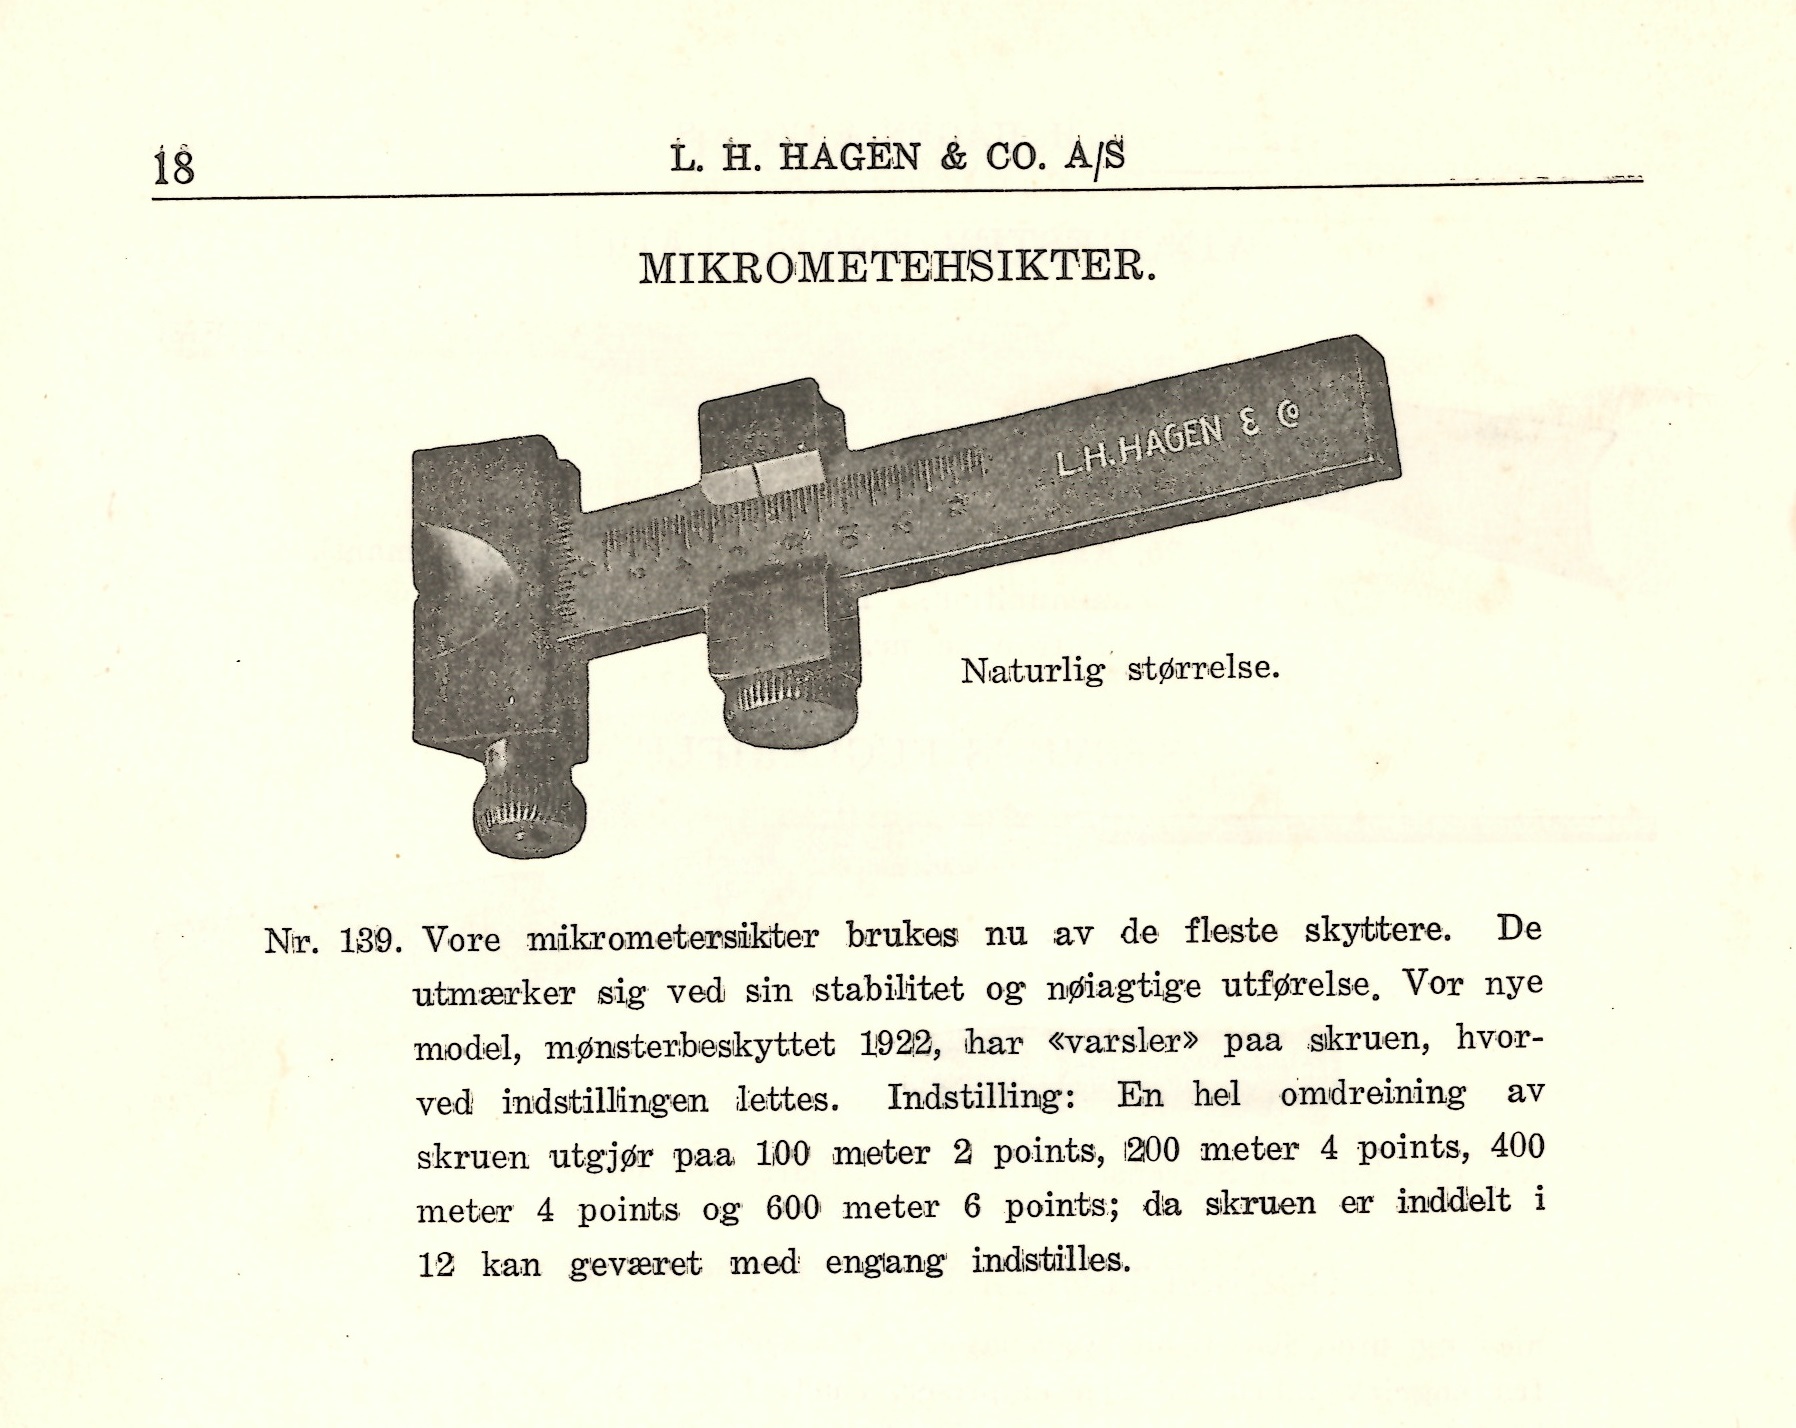 ./guns/utstyr/bilder/Utstyr-Krag-Mikrometersikte-1925-29.jpg